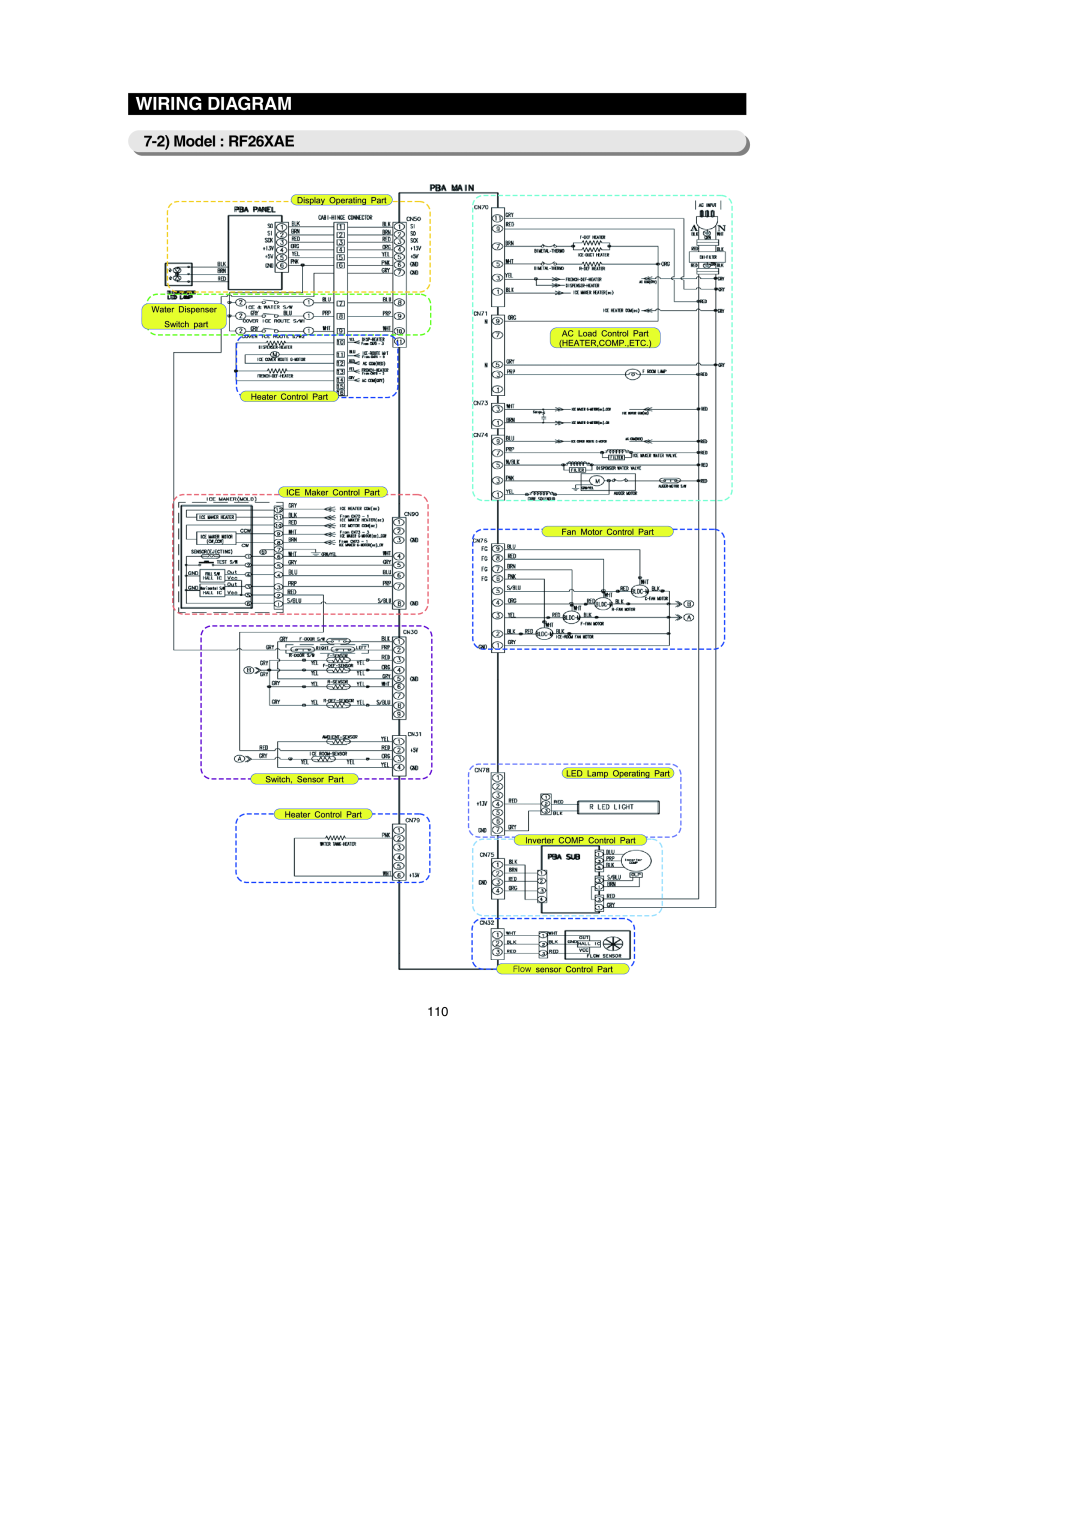 Samsung RF267AE**, RF267AEBP, RF26XAERS, RF26XAEPN, RF26XAE**, RF26XAEXAA, RF267AERS, RF267AEWP Wiring Diagram, Model RF26XAE 